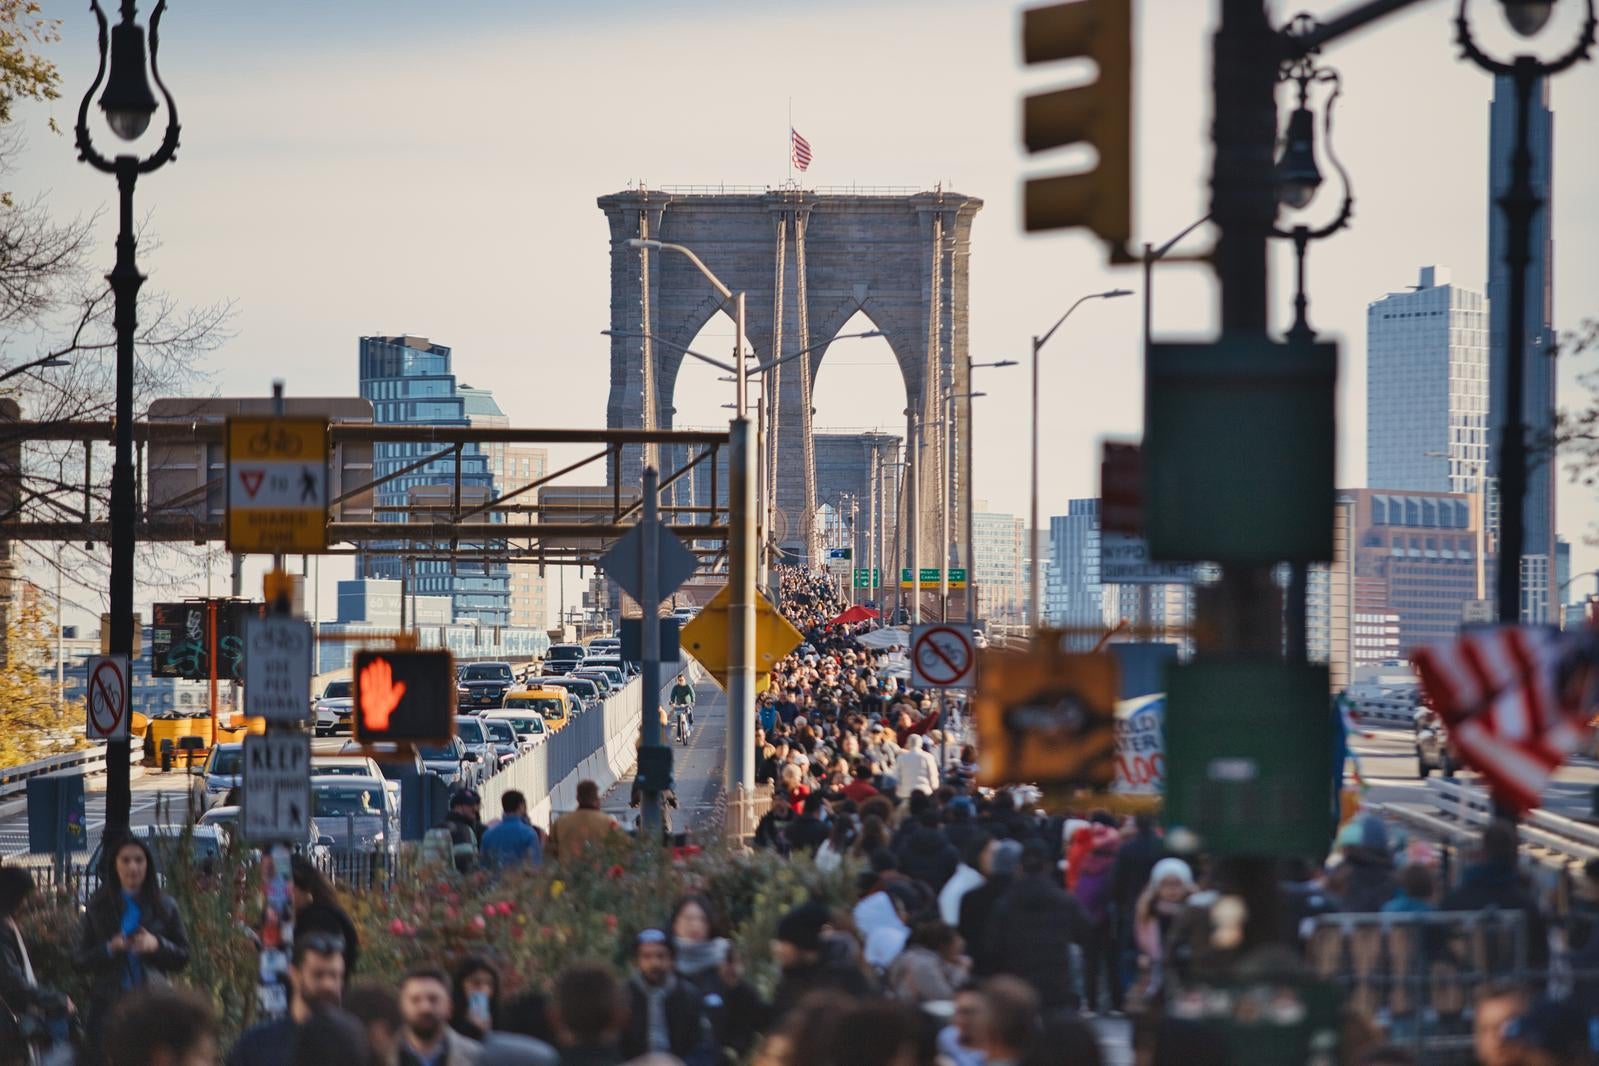 「ブルックリン橋での人混みと渋滞」の写真